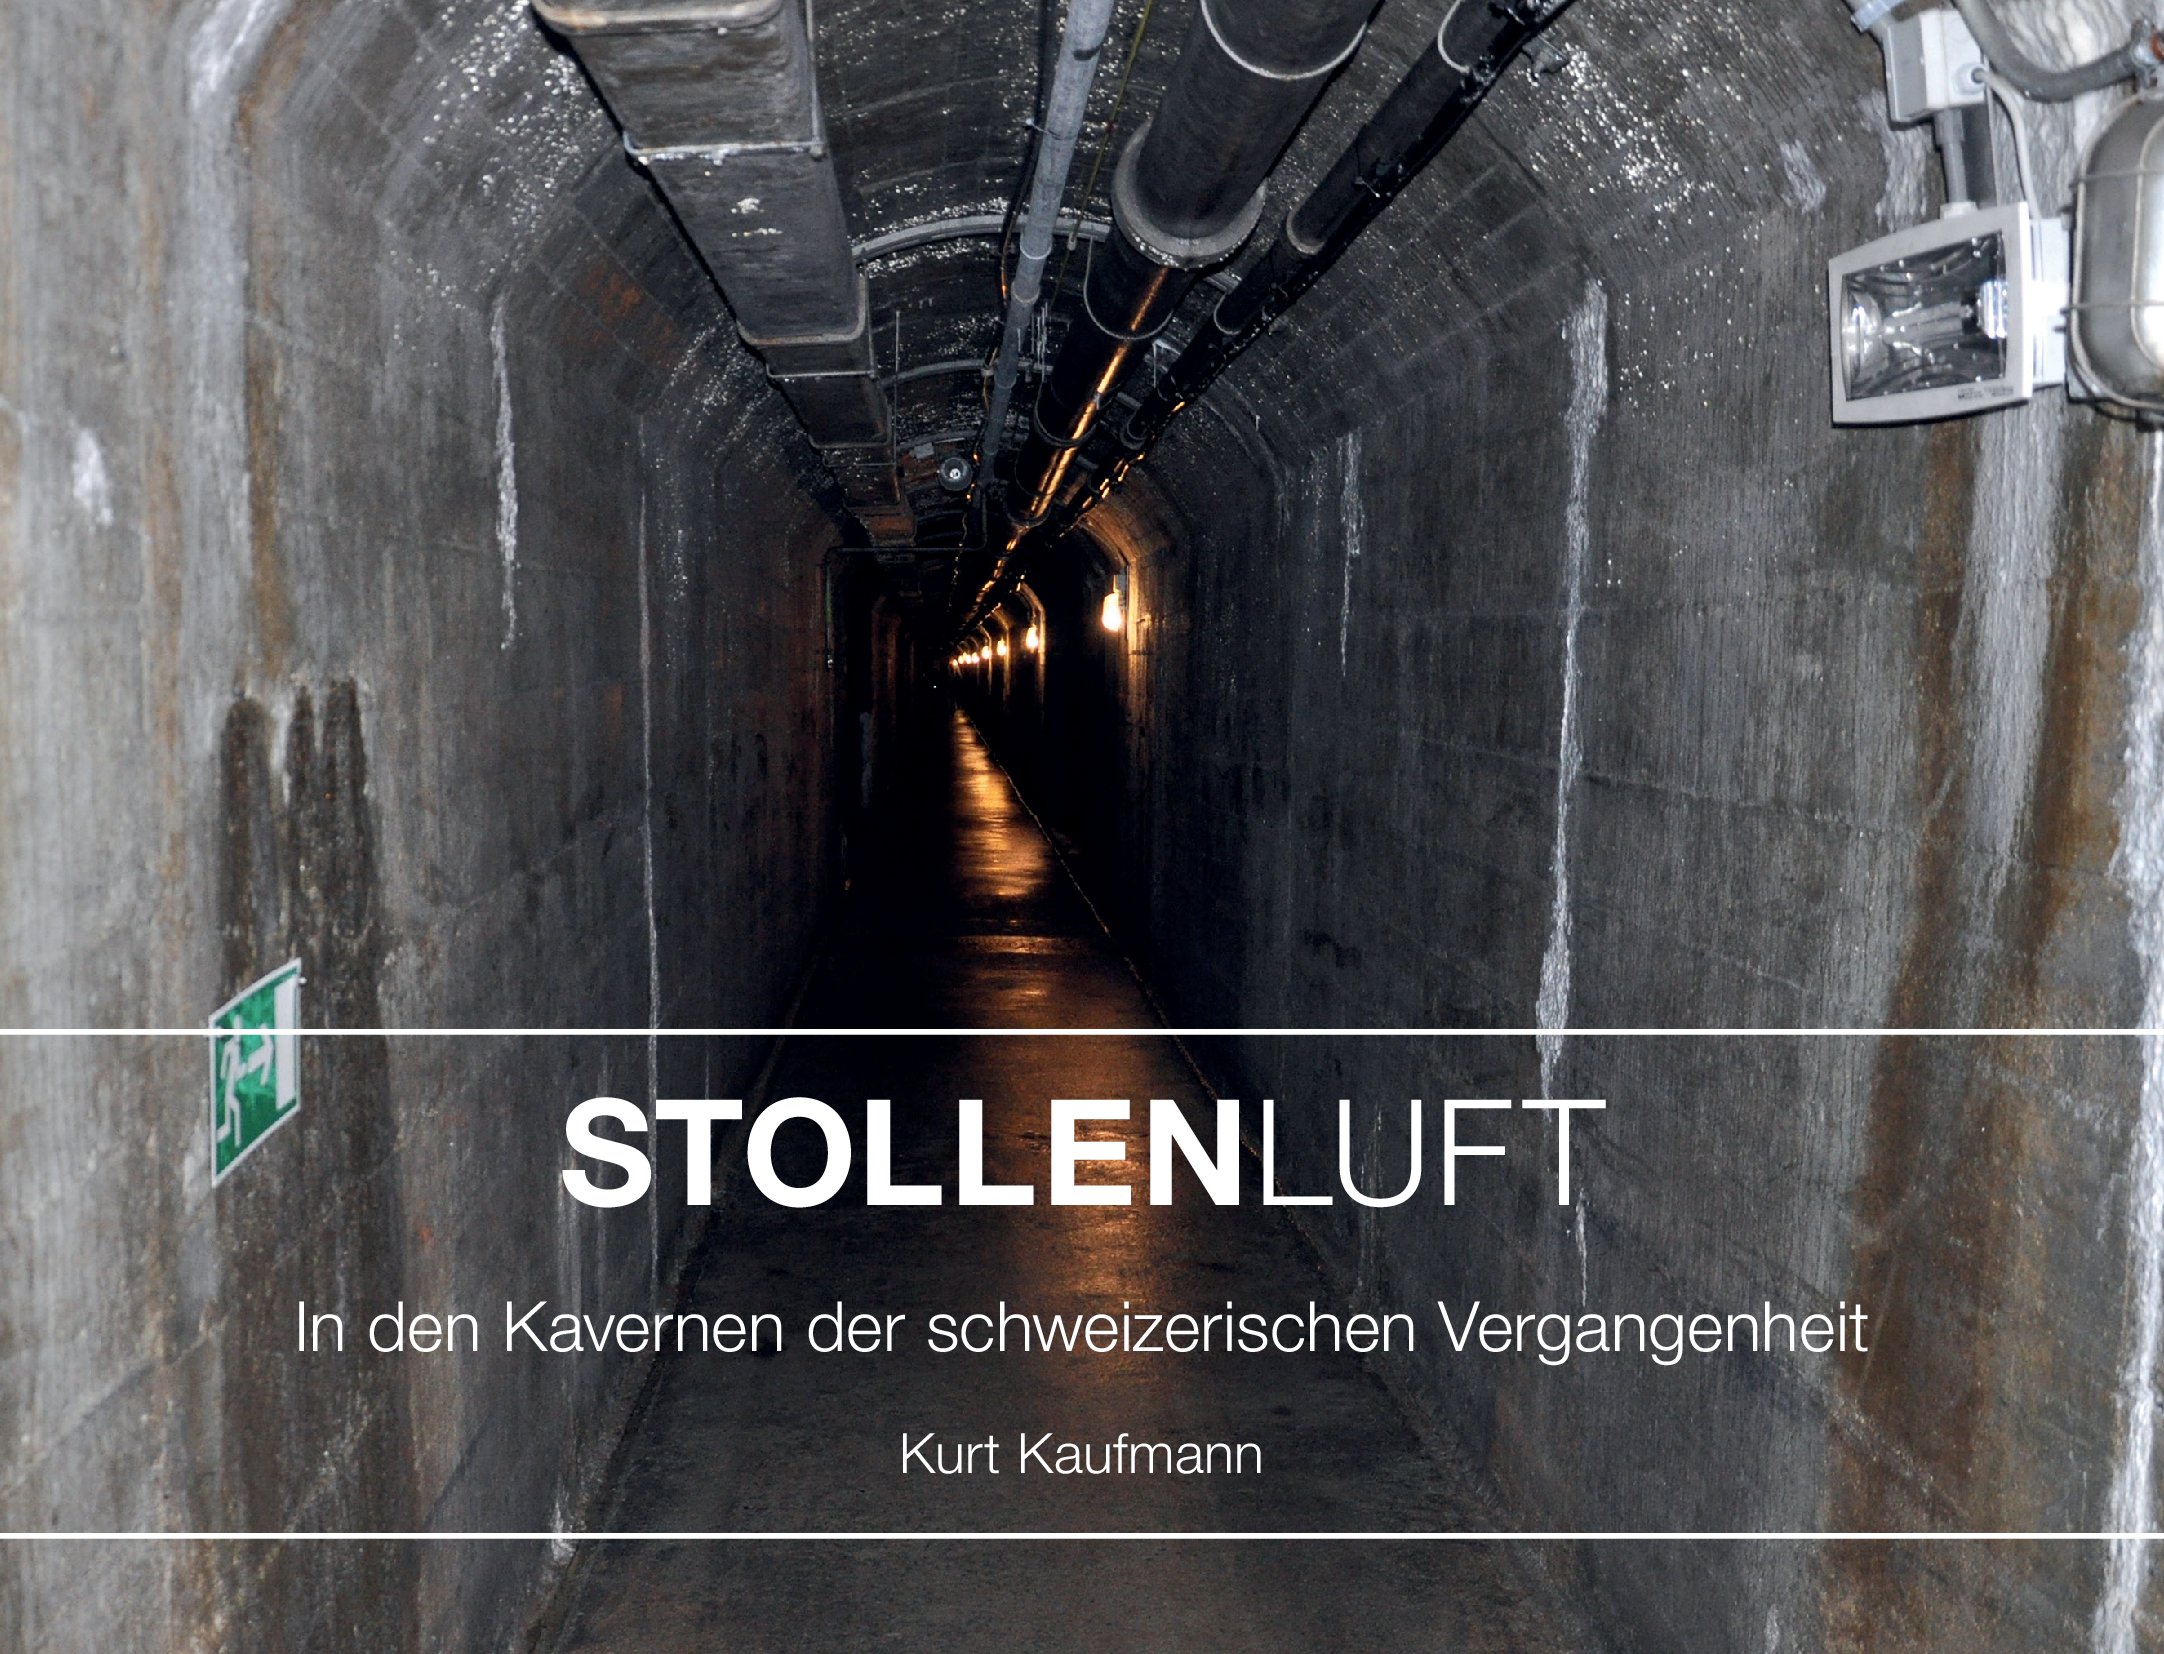 Stollenluft: In den Kavernen der schweizerischen Vergangenheit, von Kurt Kaufmann